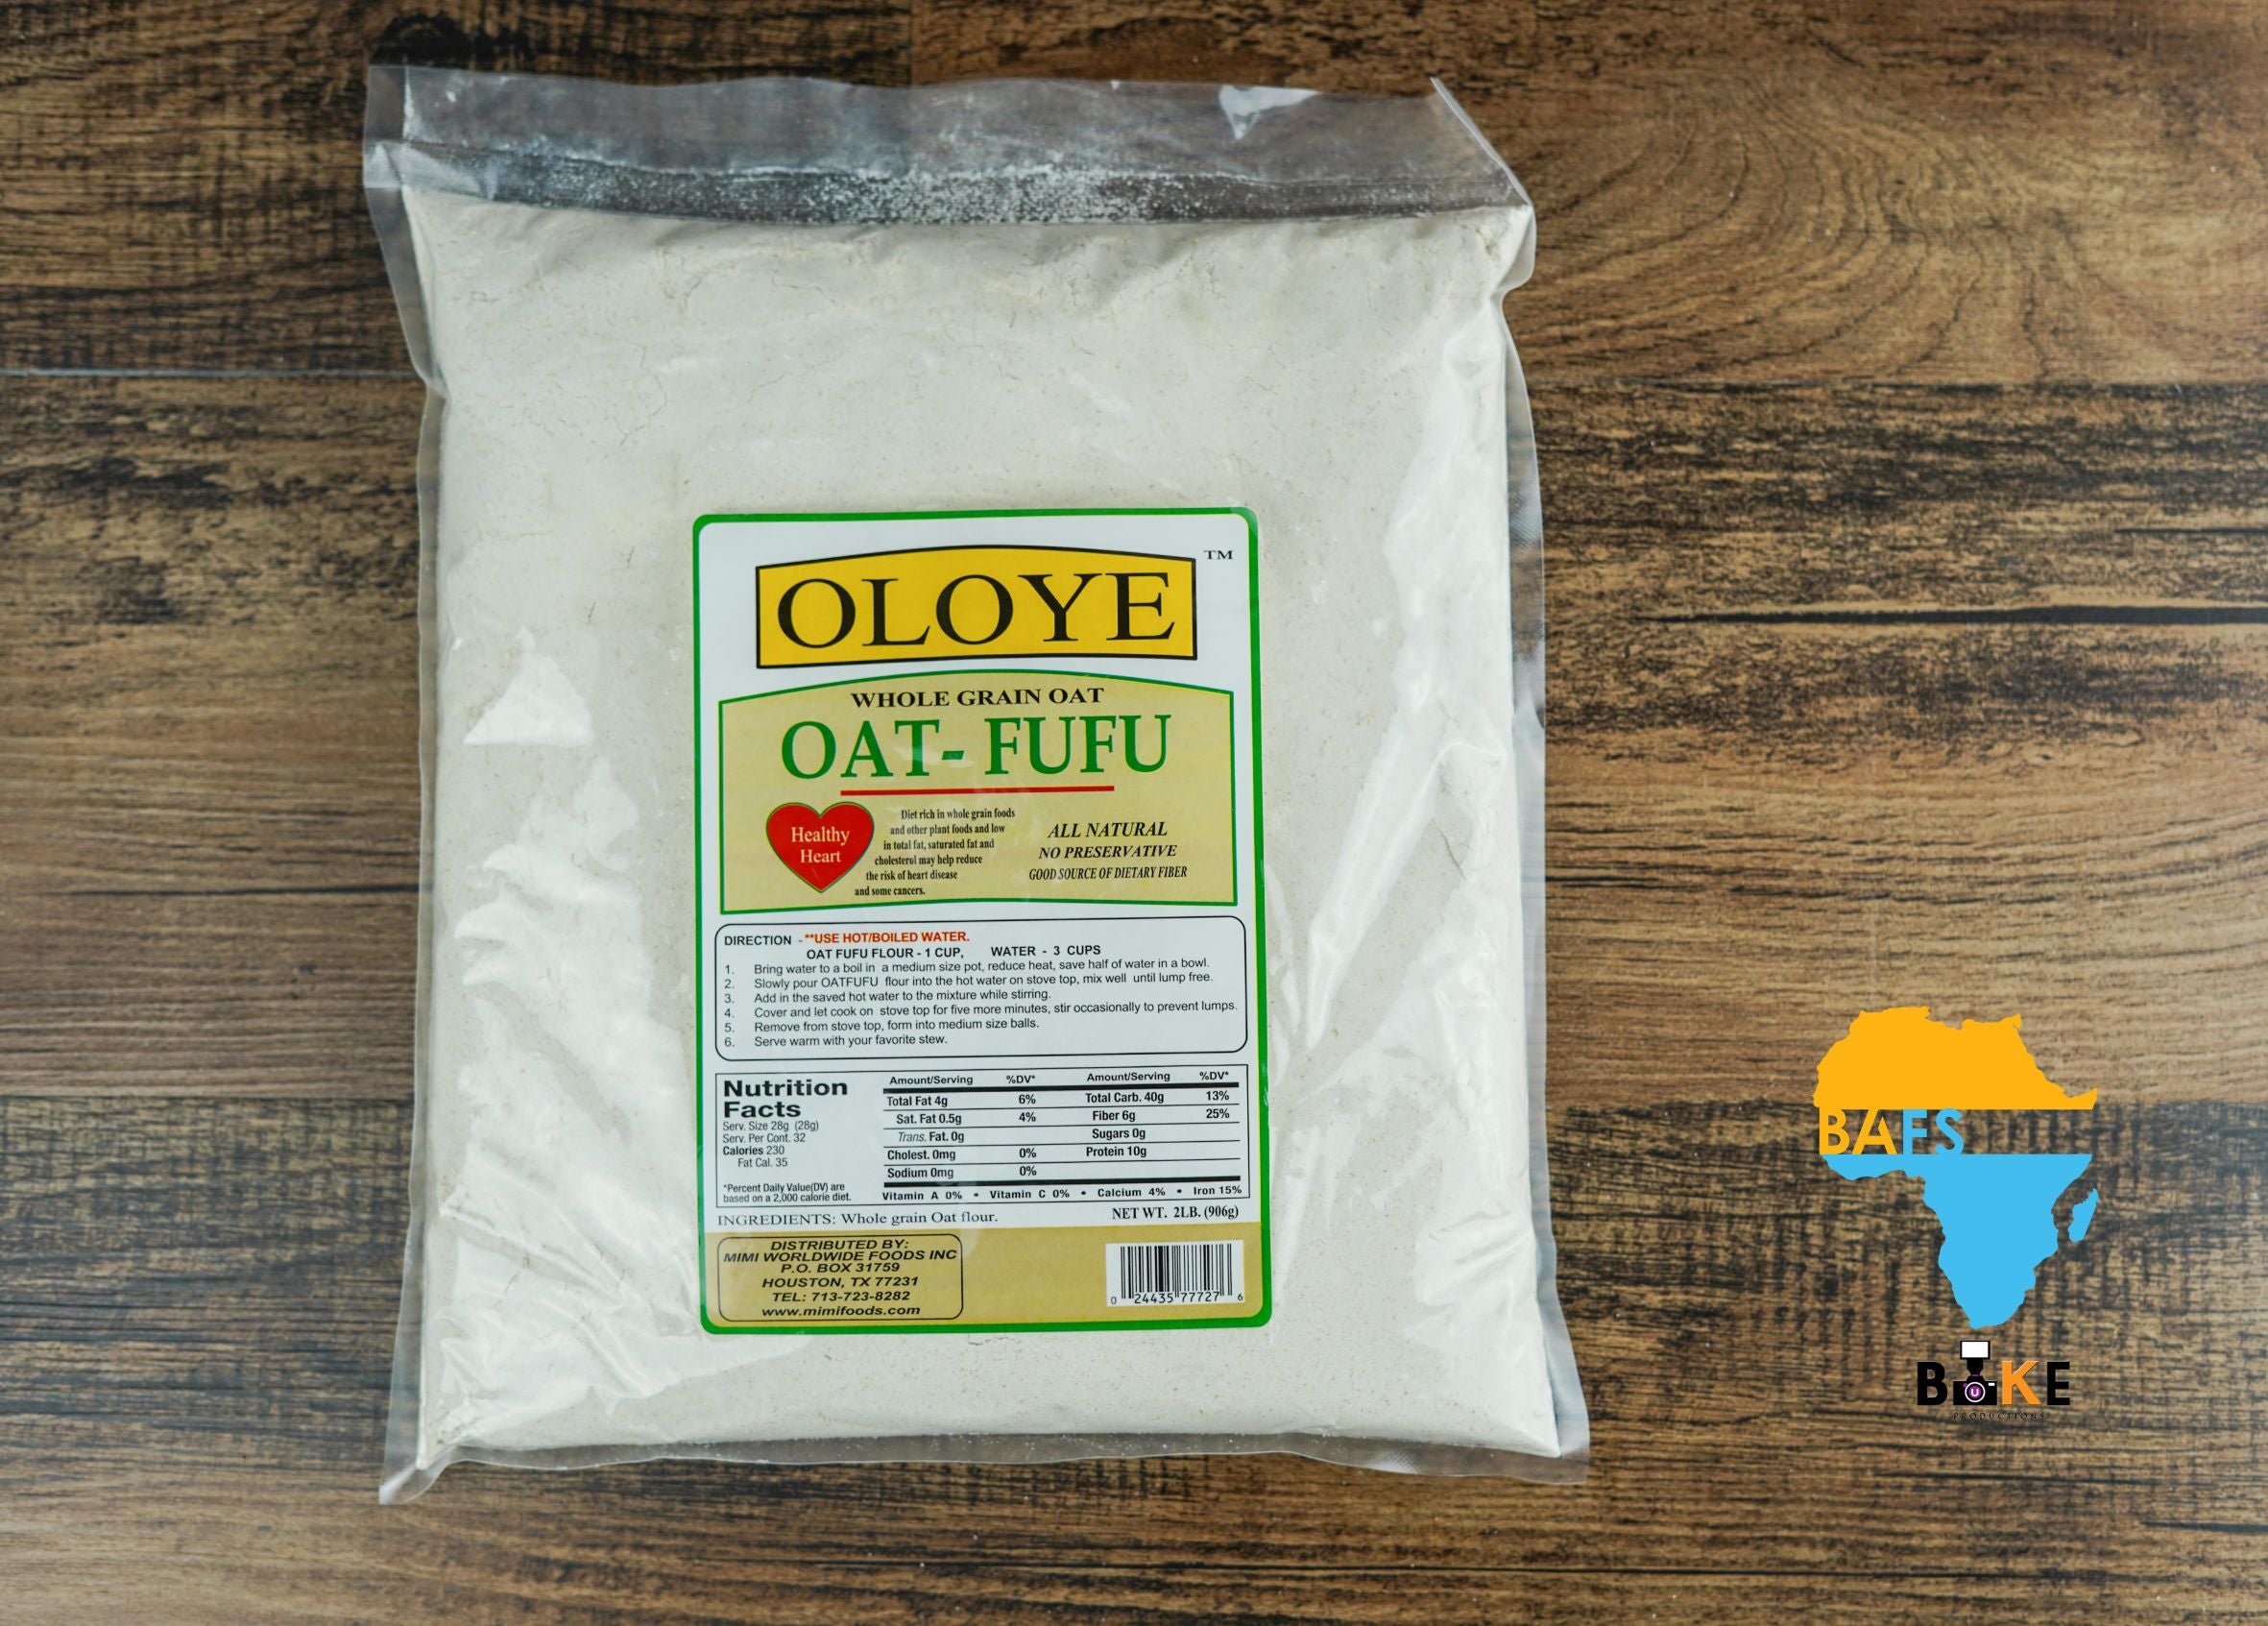 Oloye - Whole Grain Oat Fufu